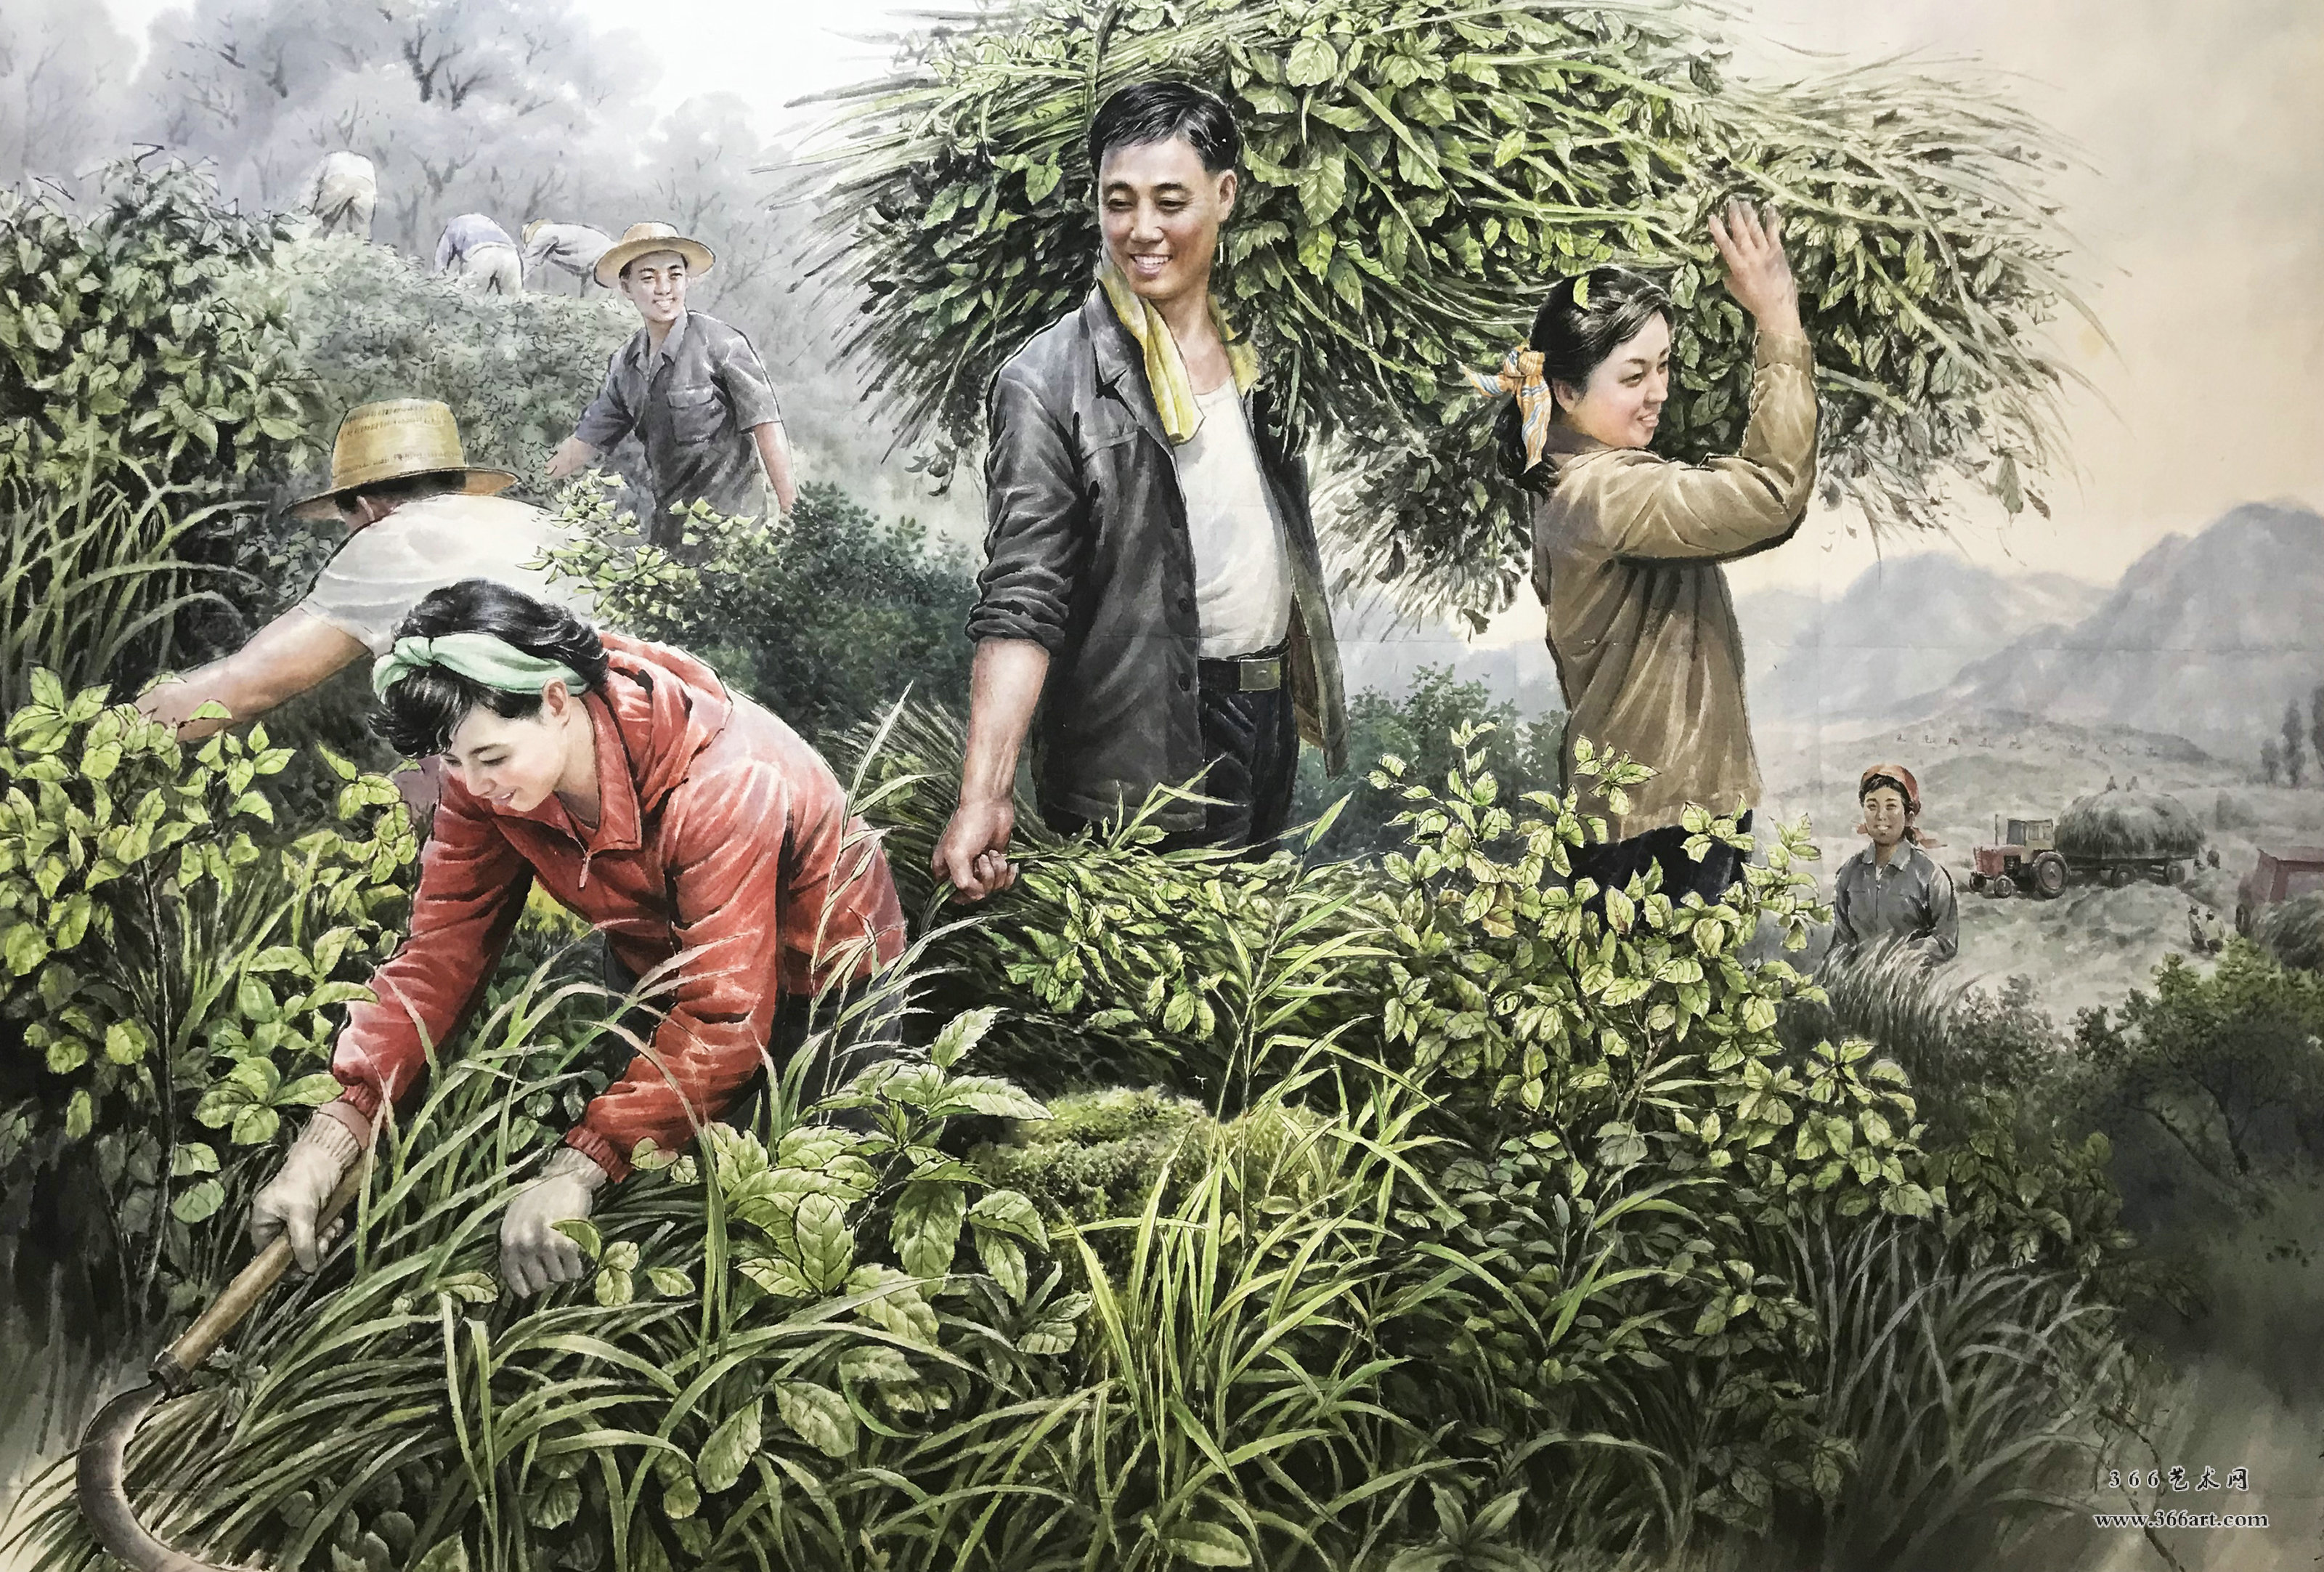 【朝鲜画】金在龙 集体劳作 2016年 188 x 130cm